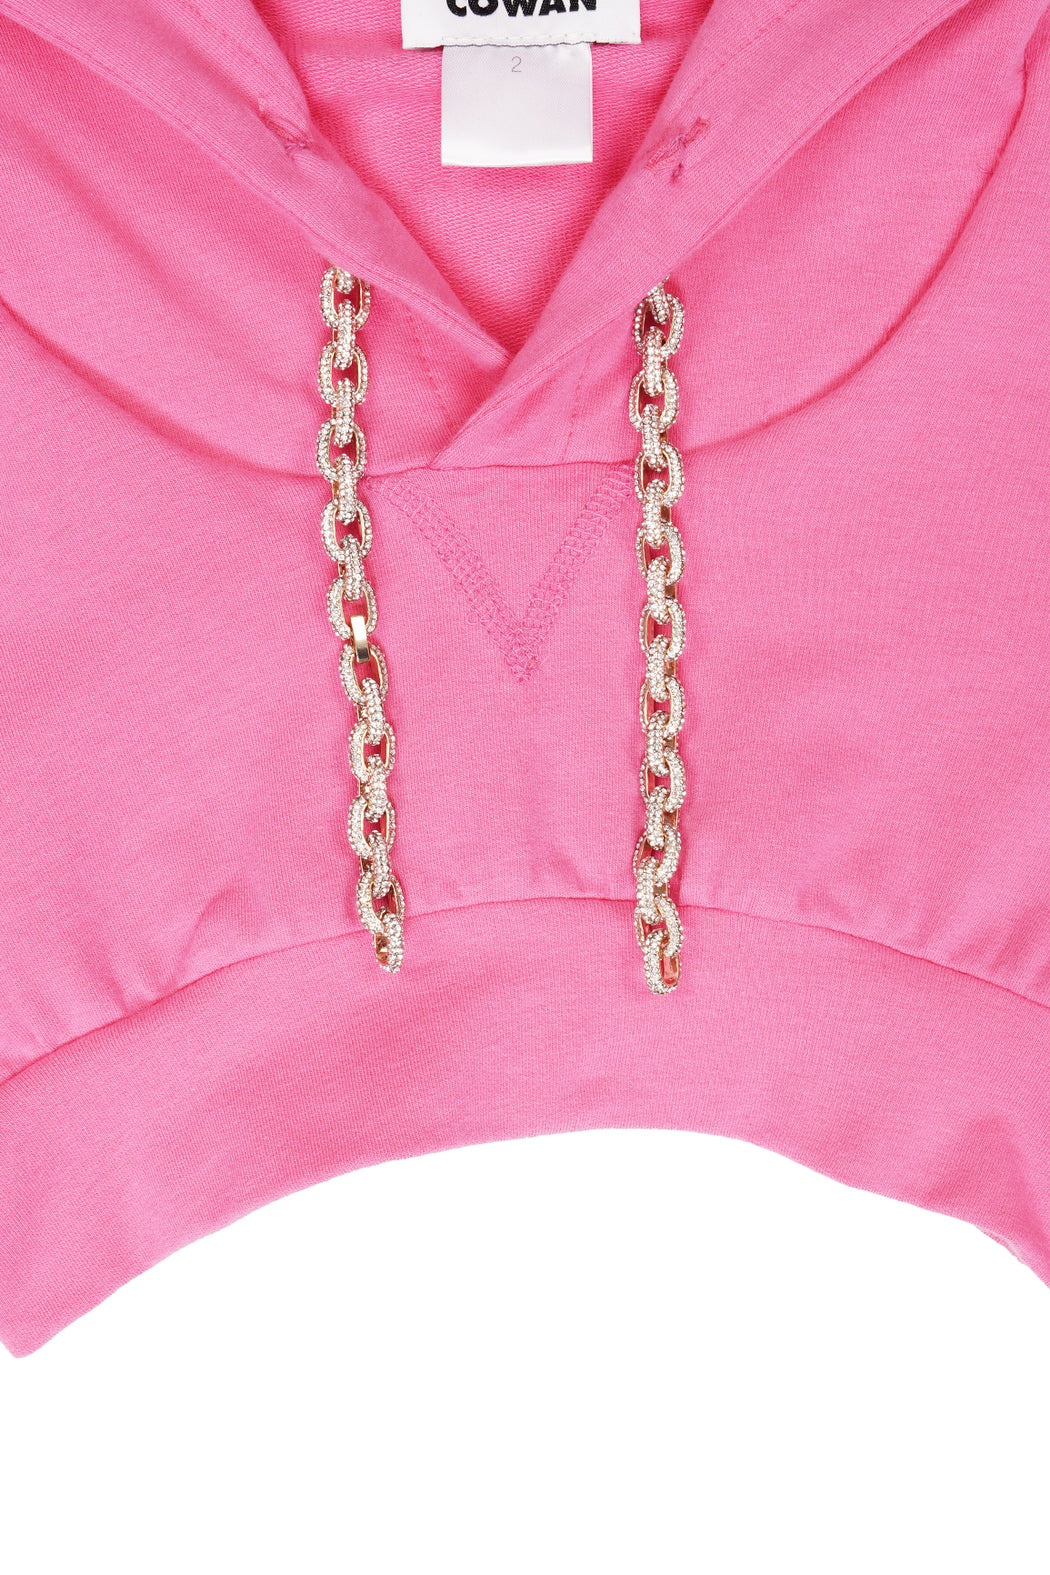 Cropped Sweatshirt - Pink